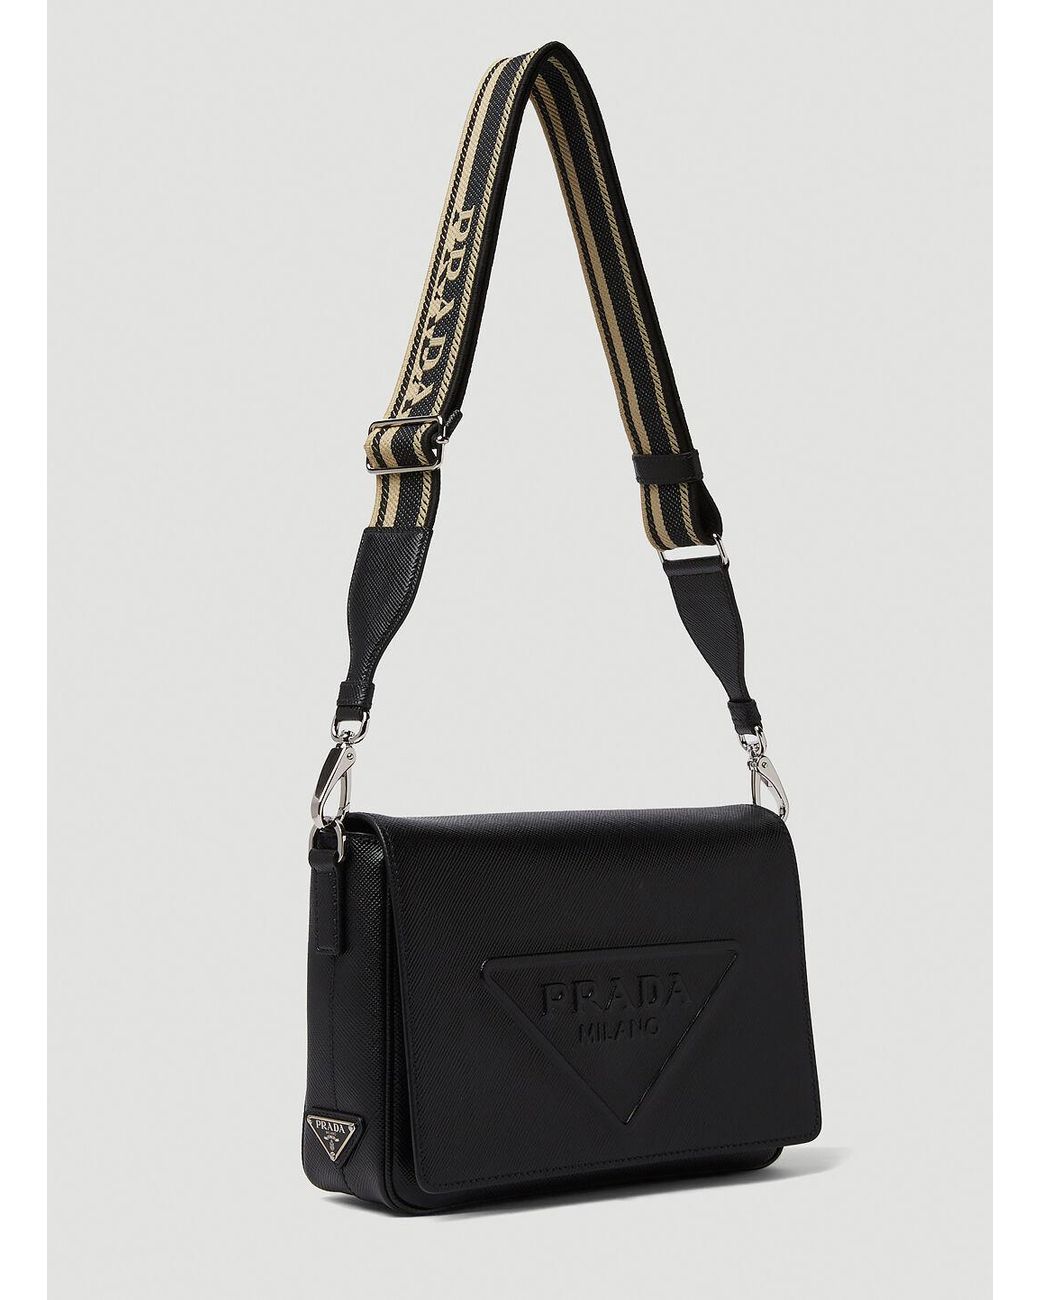 Prada Saffiano-leather Crossbody Bag